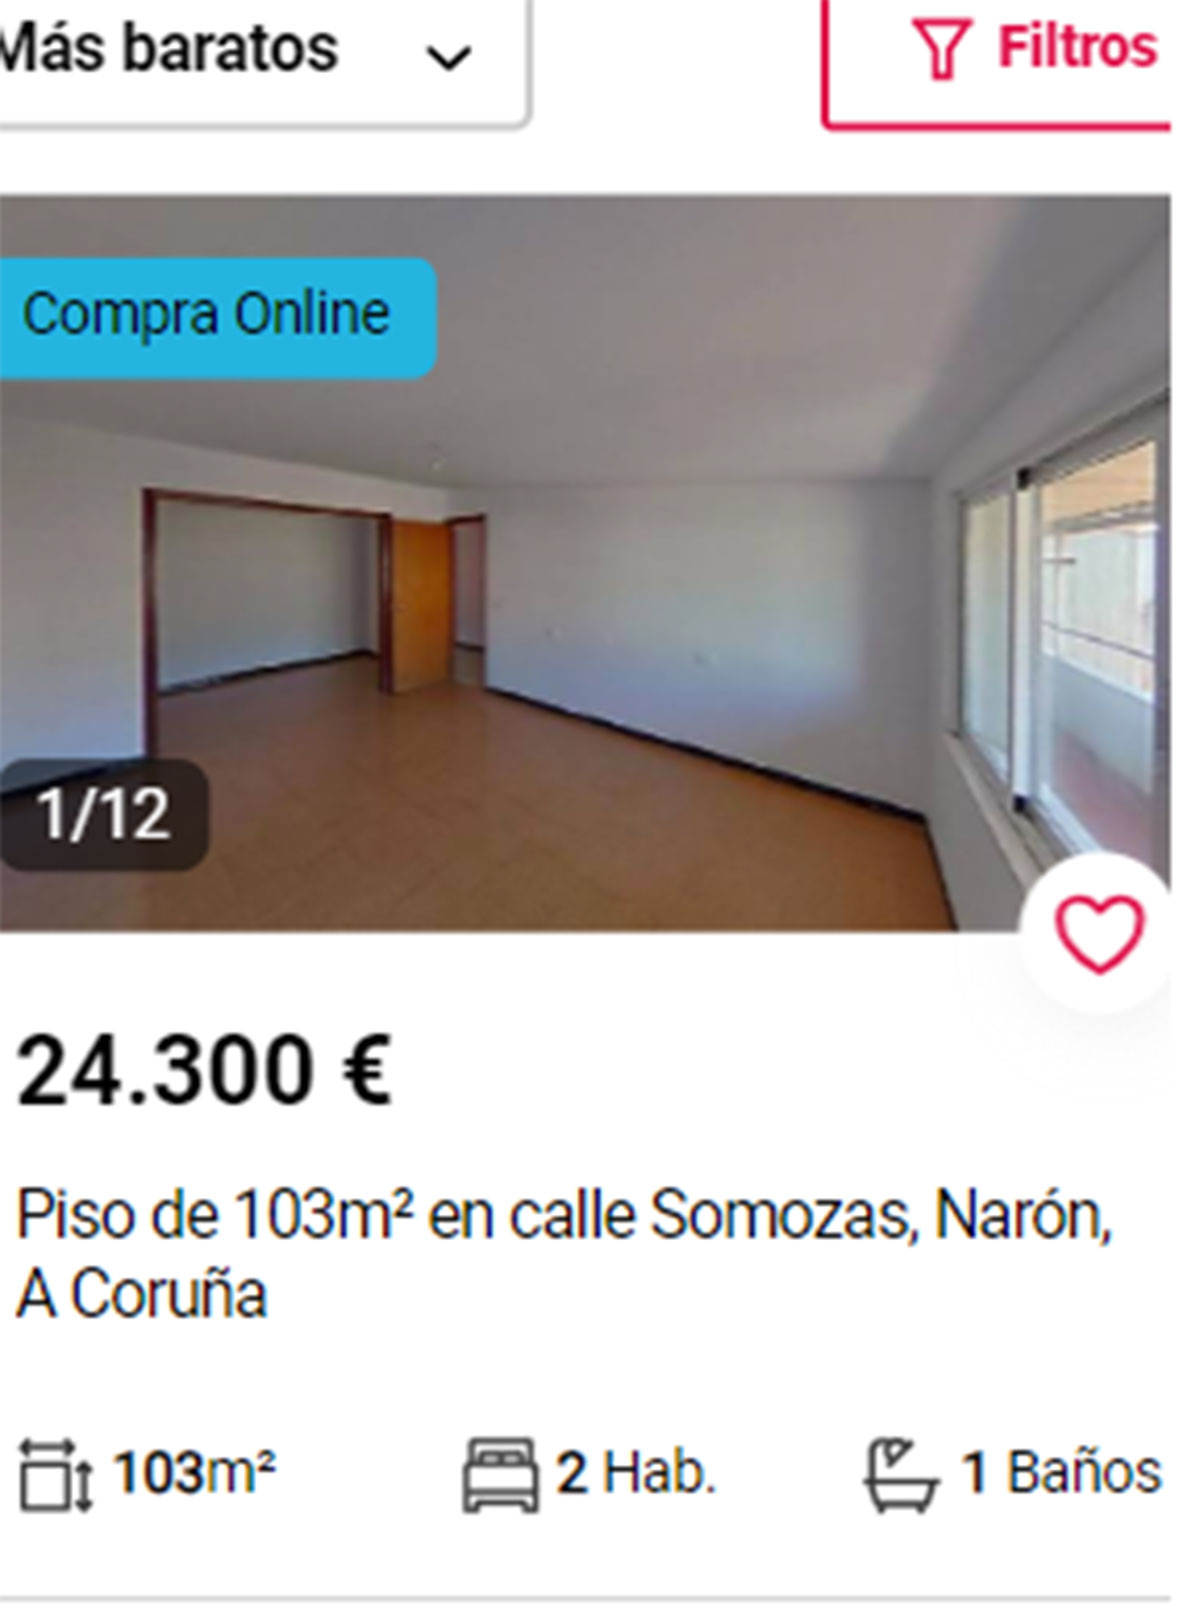 Piso en A Coruña por 24.300 euros